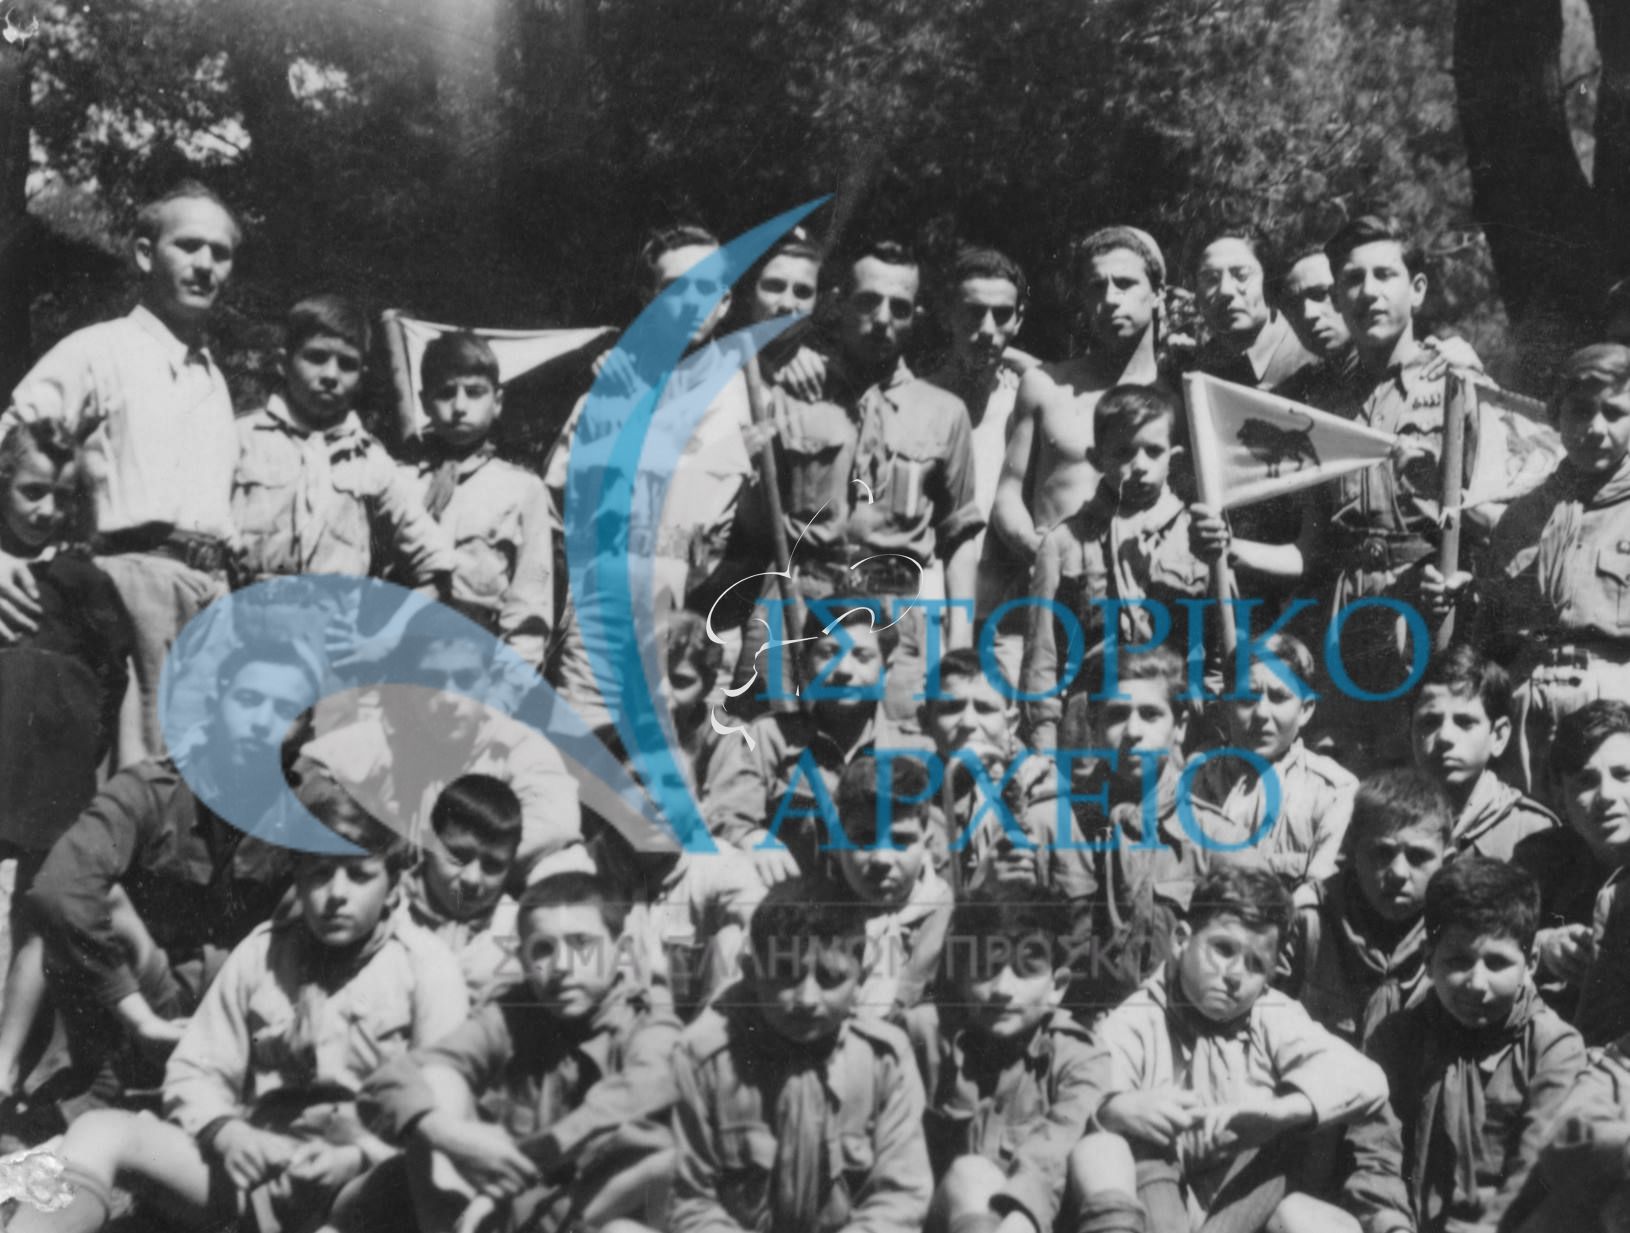 Η 50η Ομάδα Προσκόπων Αθηνών σε αναμνηστική φωτογραφία από την κατασκήνωση στο Καστρί της Κηφισιάς το 1946.